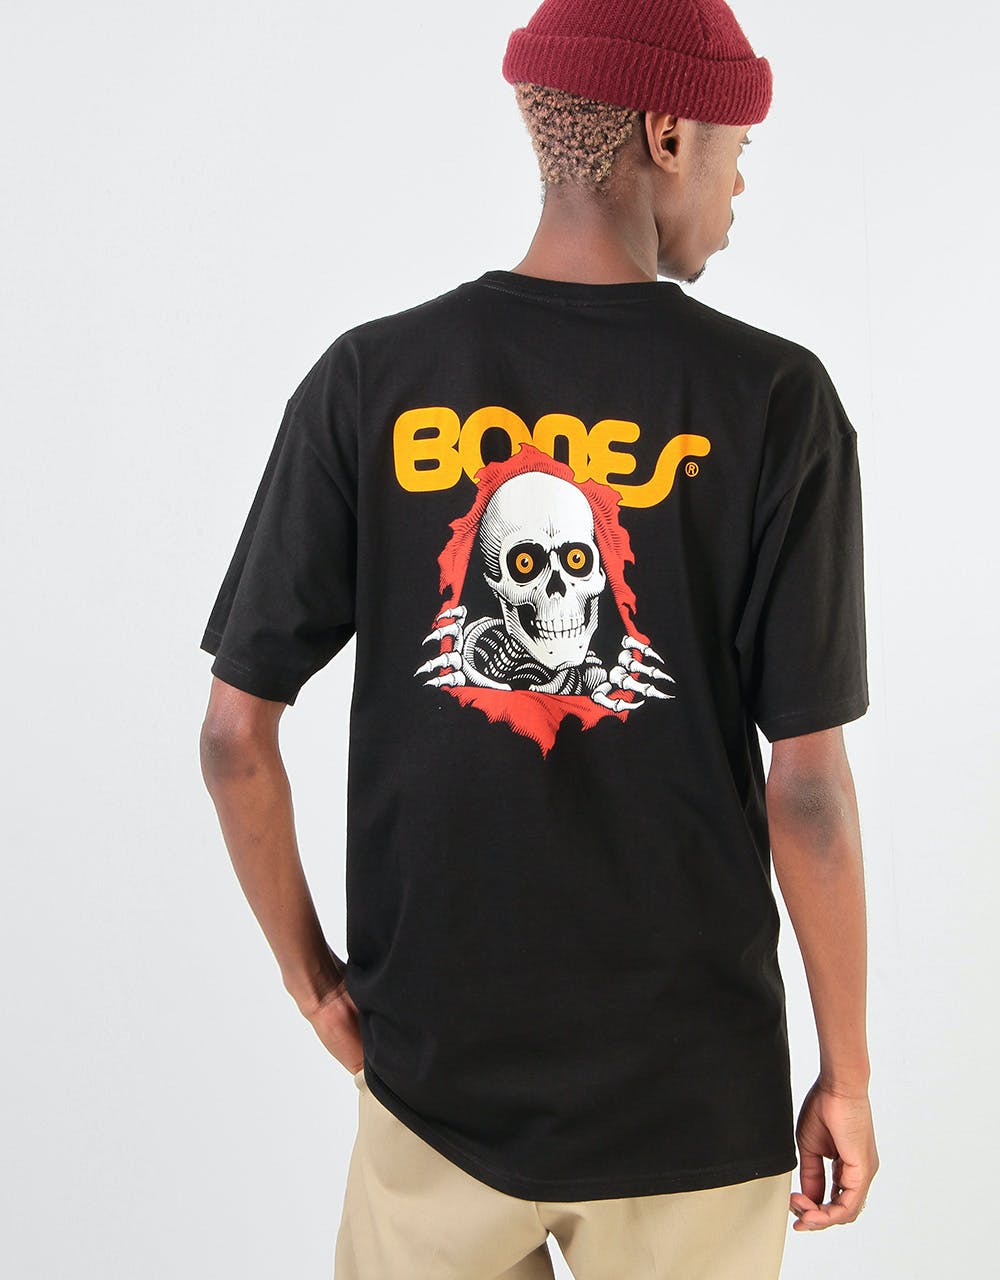 Powell Peralta Ripper T-Shirt - Black